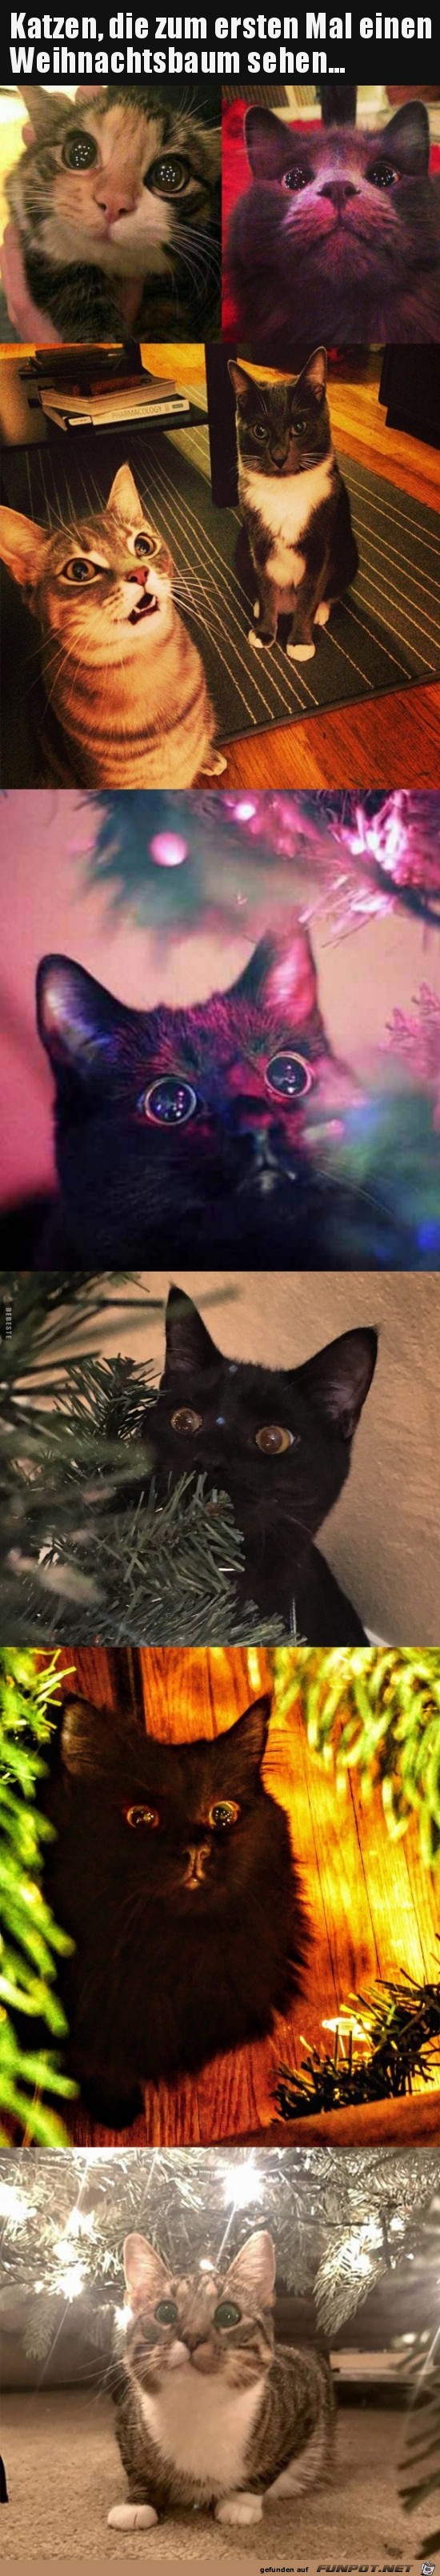 Katzen und der Weihnachtsbaum